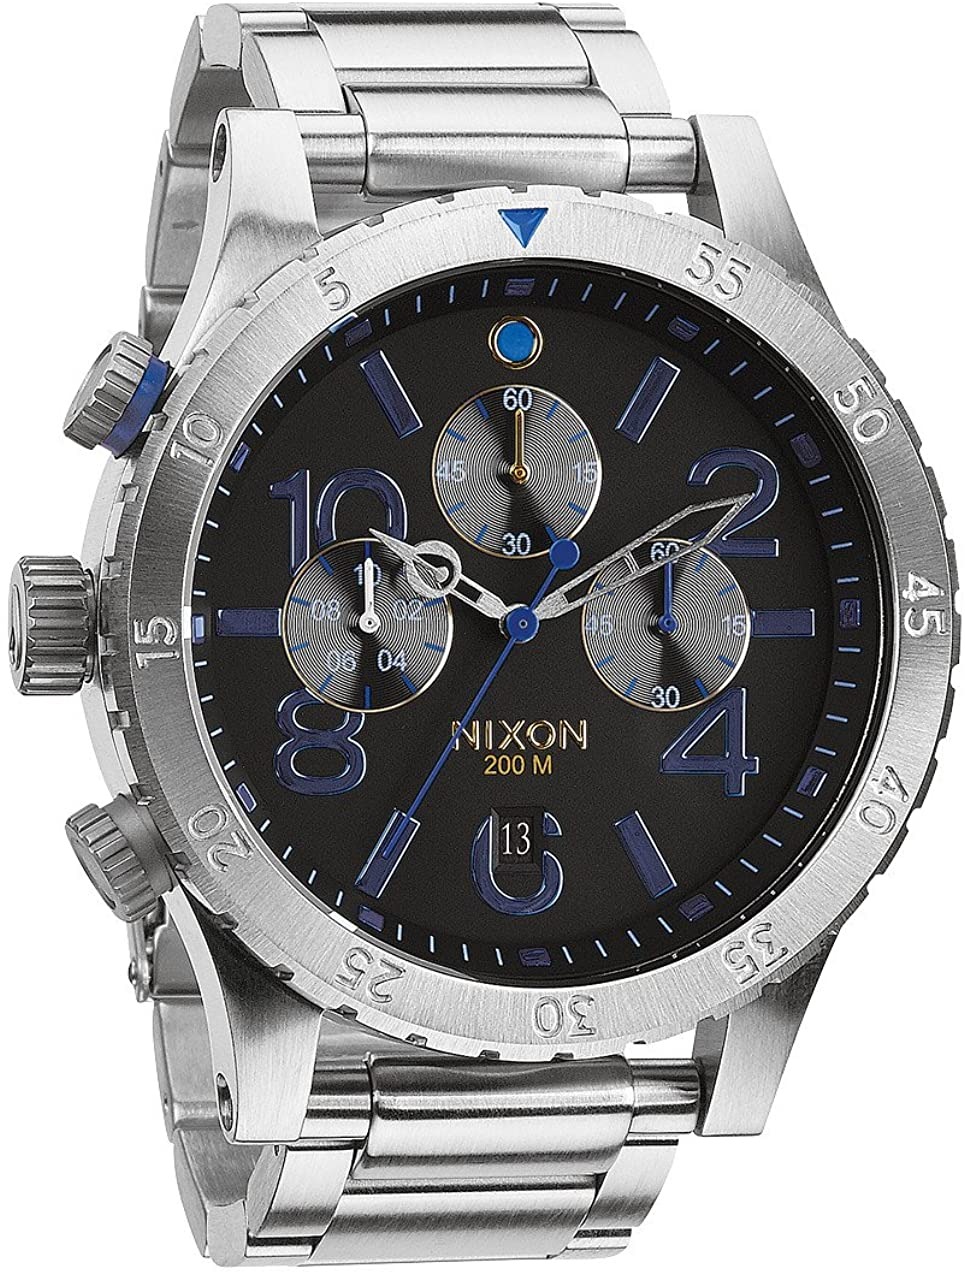 ニクソン NIXON メンズ腕時計 48-20 A486-1529 ミッドナイト GT A4861529762469